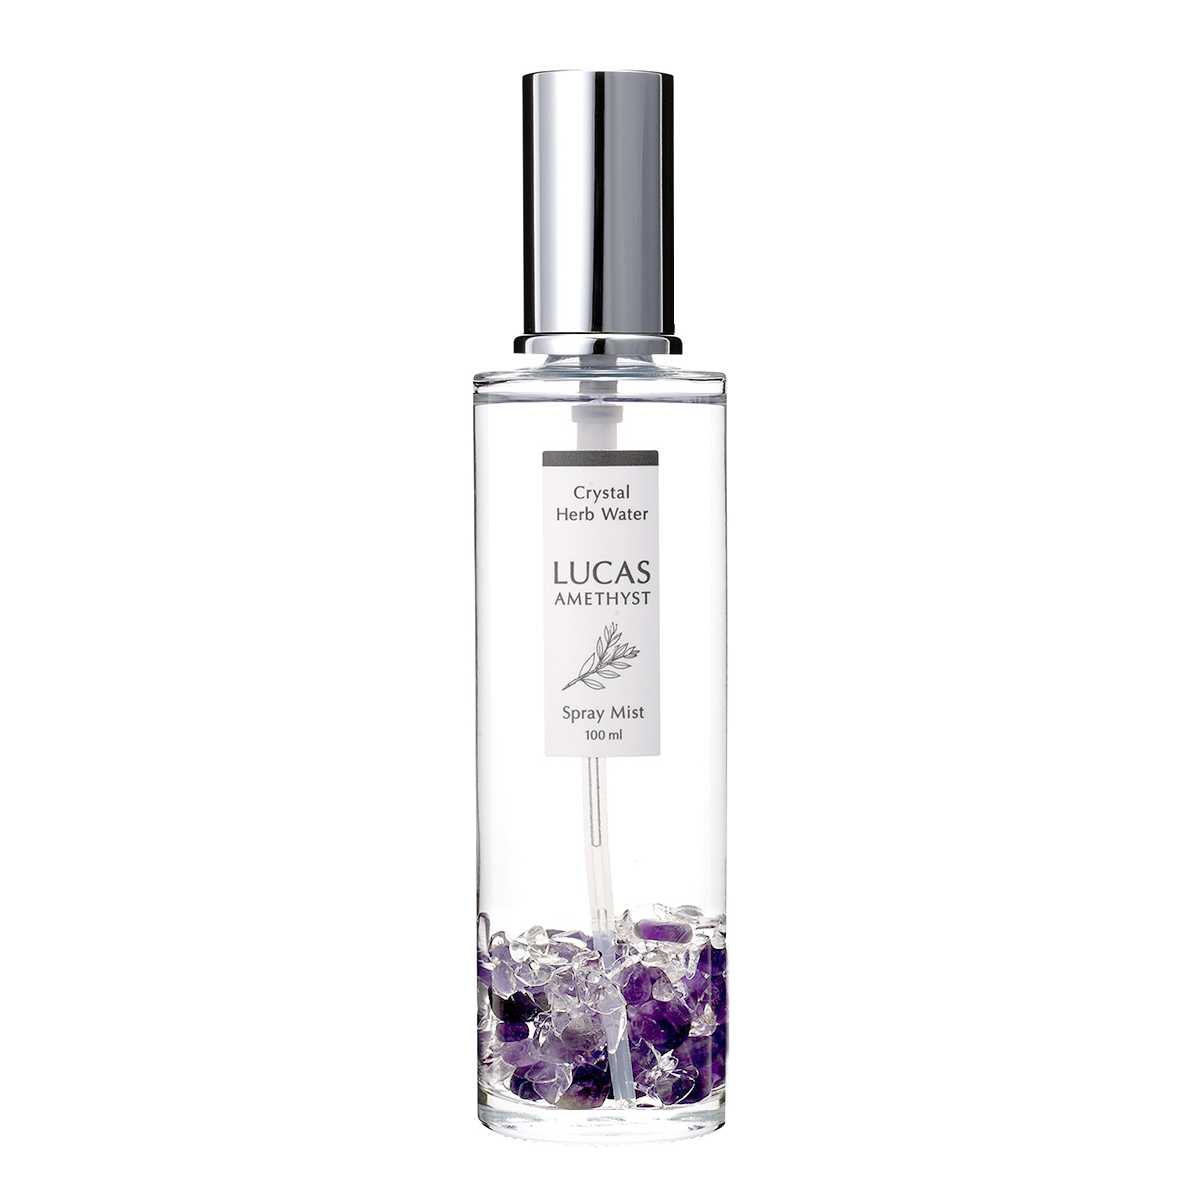 White Sage Purifying Spray LUCAS 100ml [100% natural ingredients, AMETHYST]